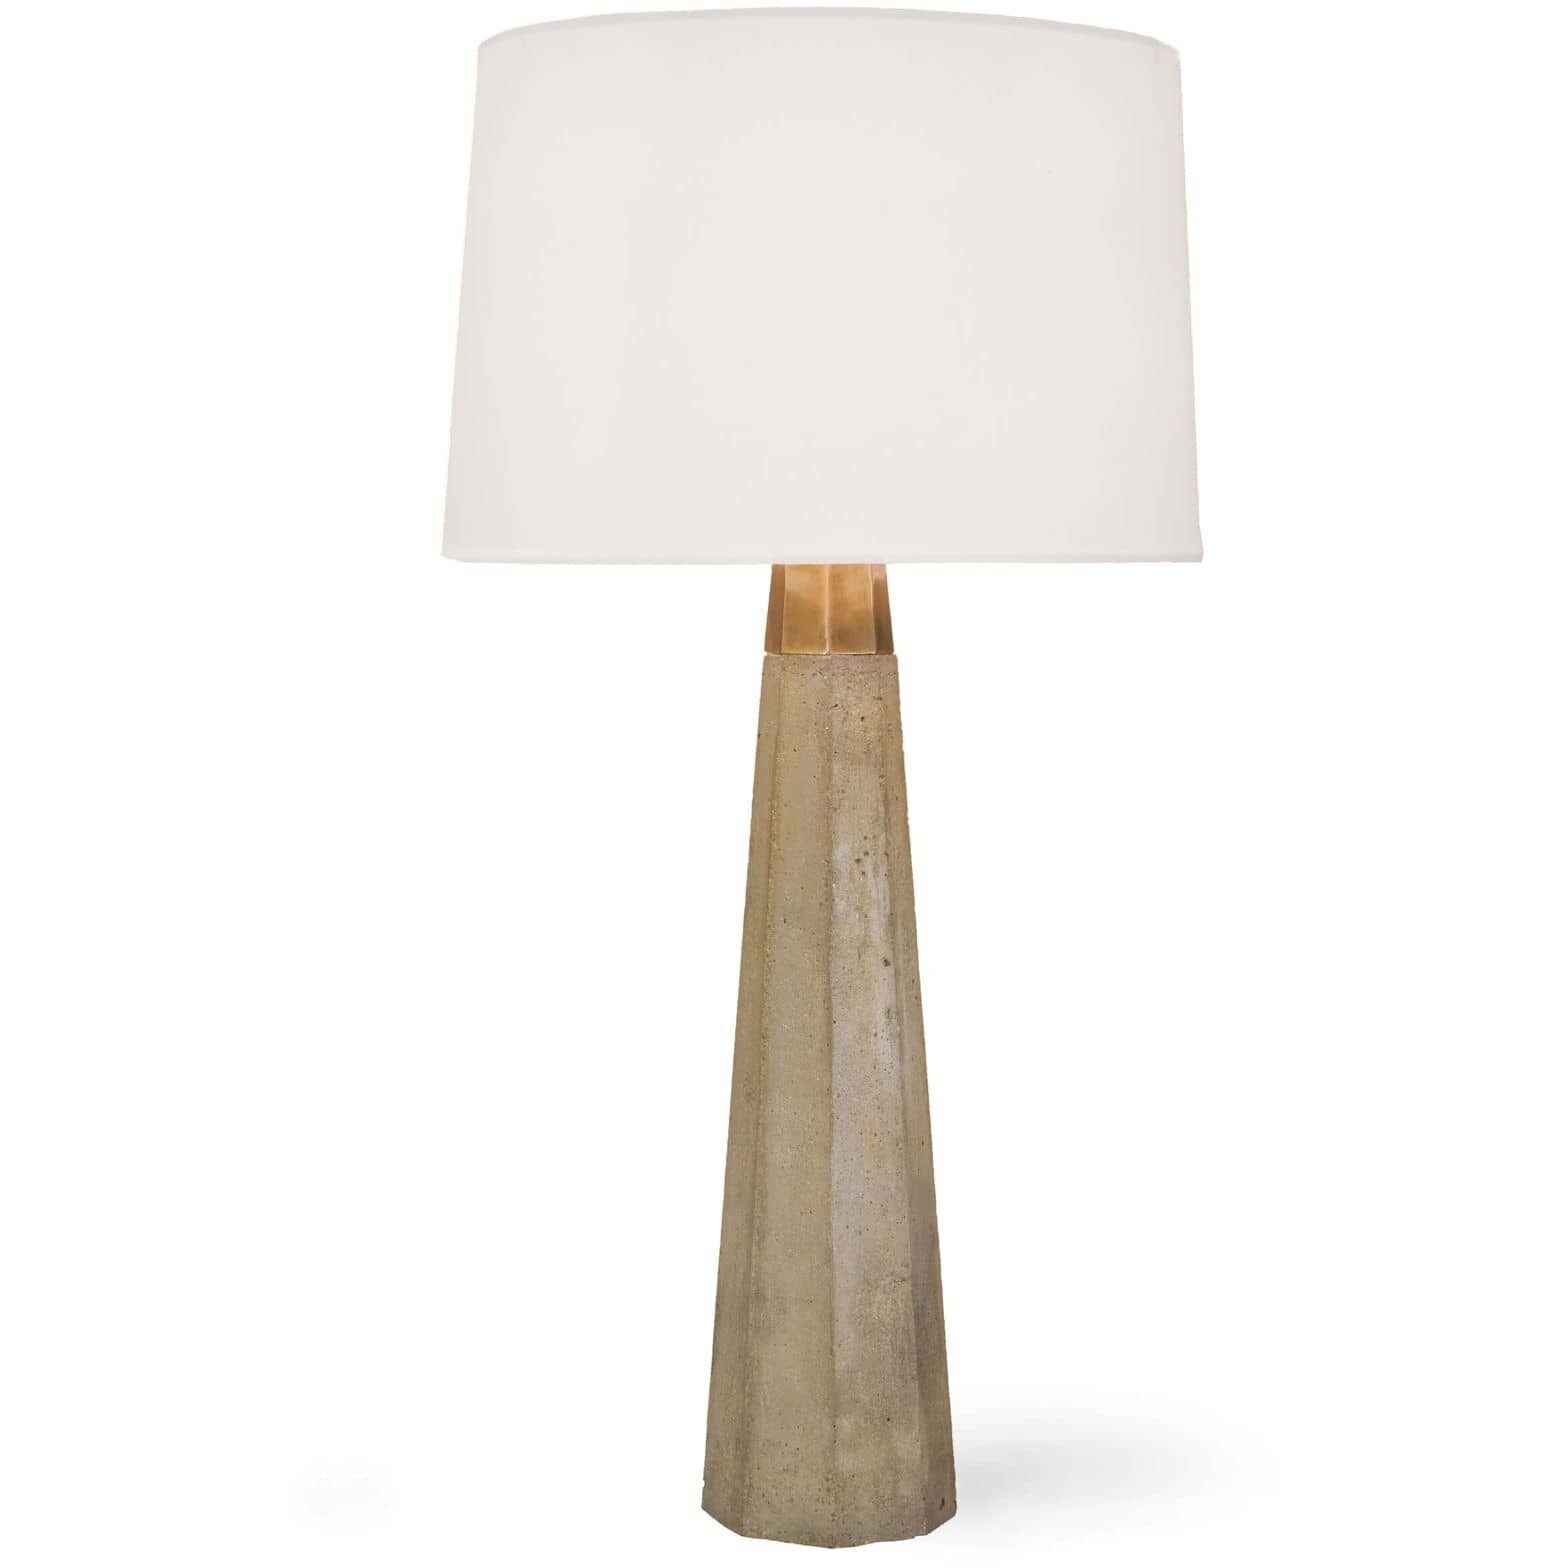 Beretta Table Lamp